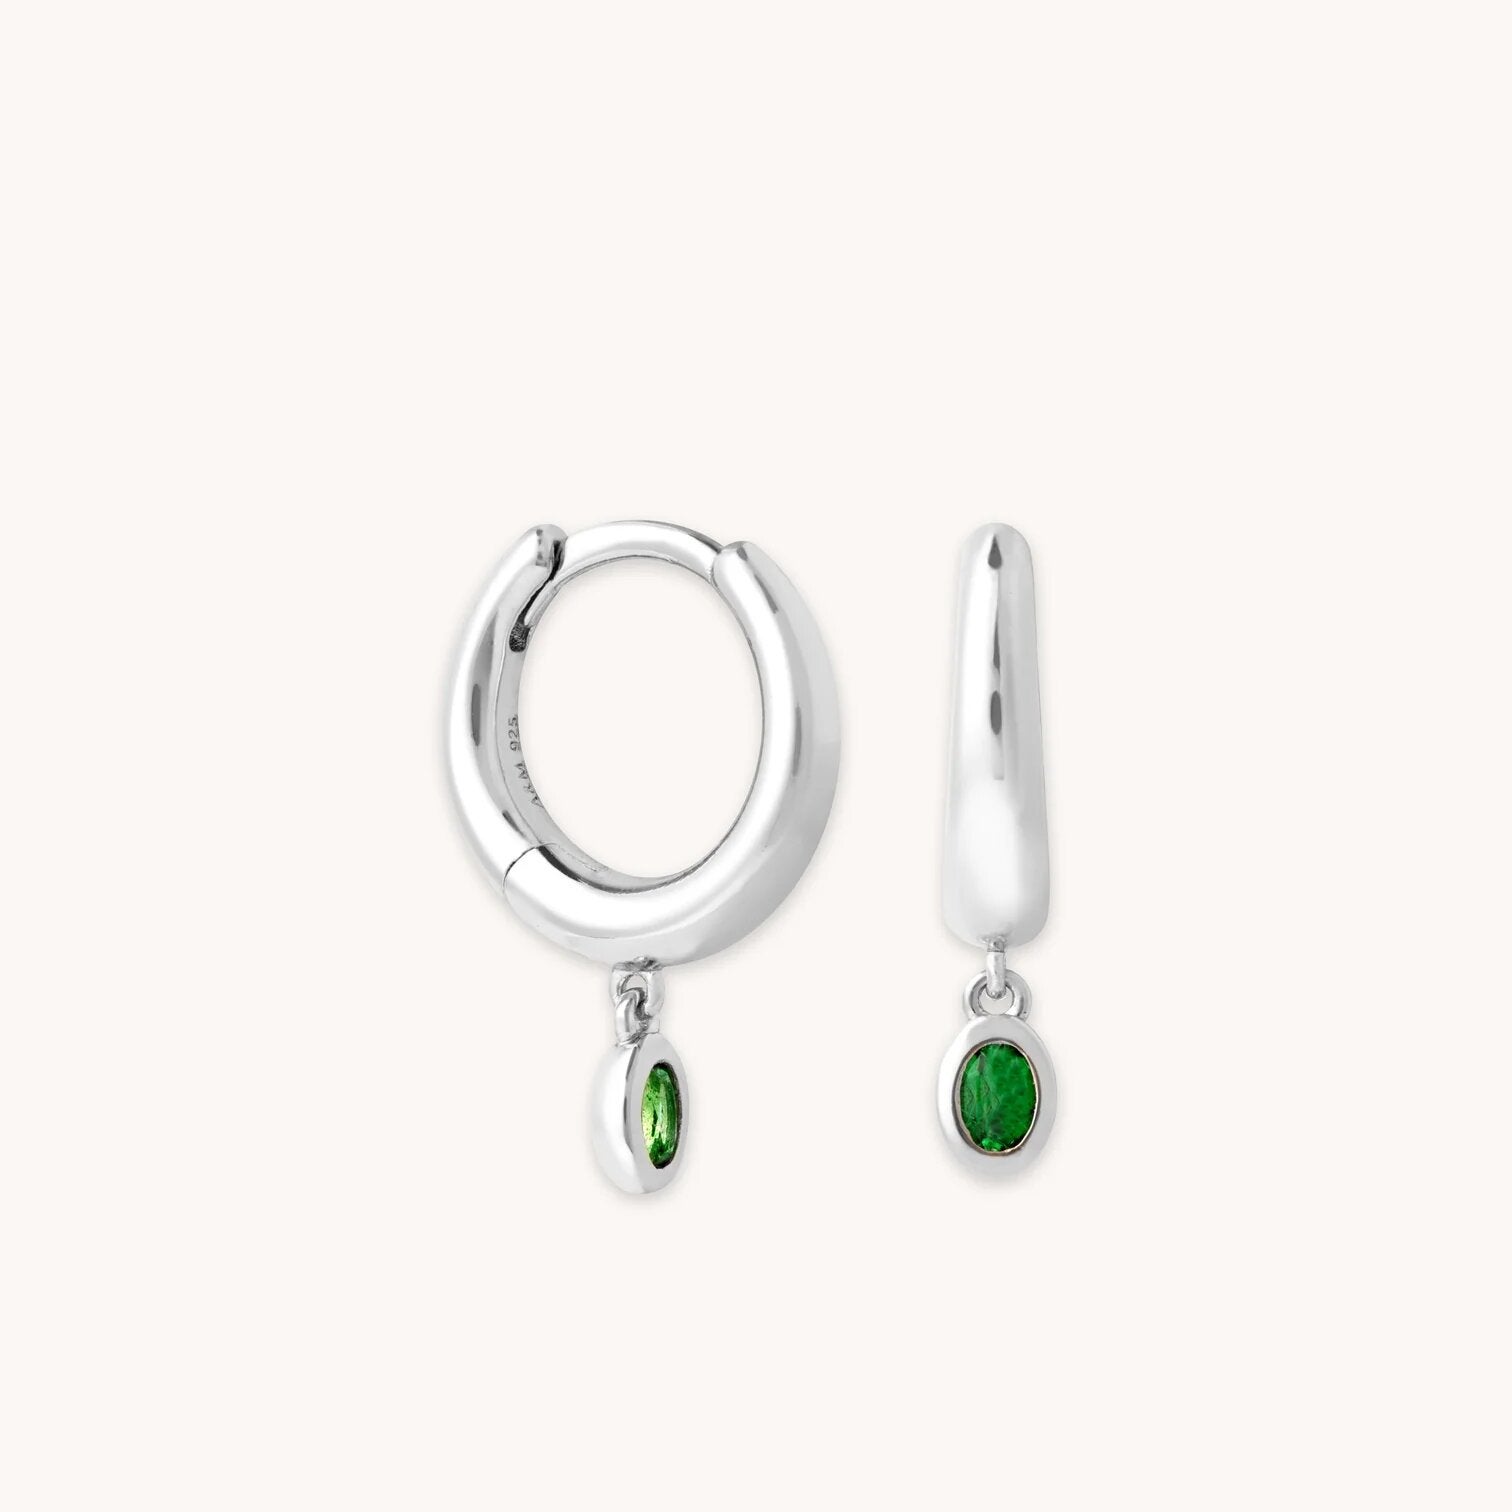 Louis Vuitton Silver Nanogram Hoop Earrings